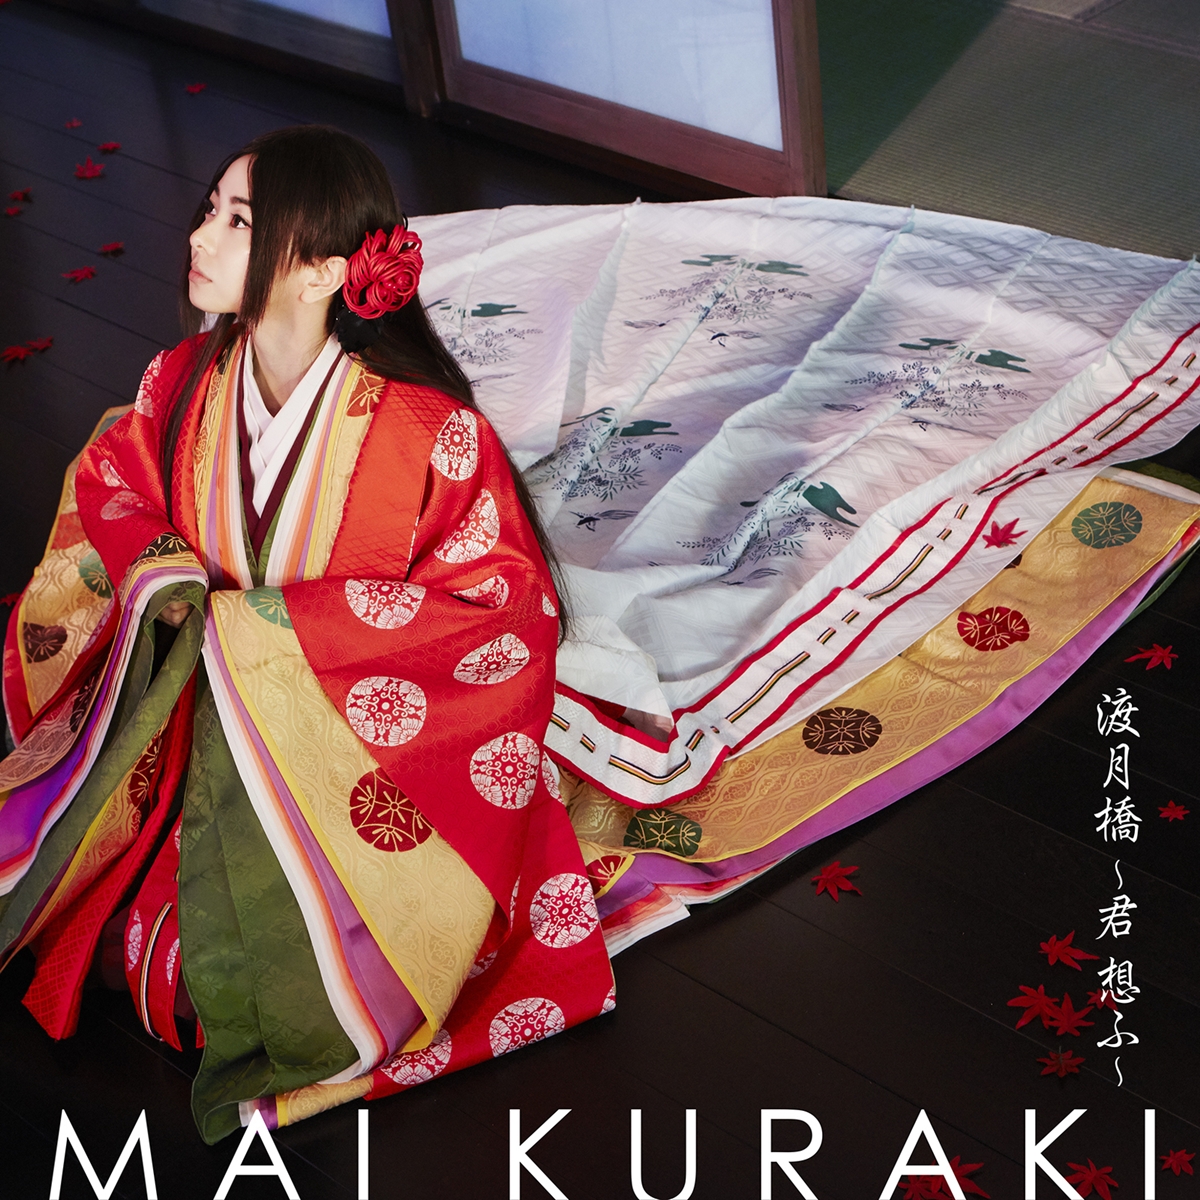 Cover art for『Mai Kuraki - Togetsukyou ~Kimi Omou~』from the release『Togetsukyou ~Kimi Omou~』